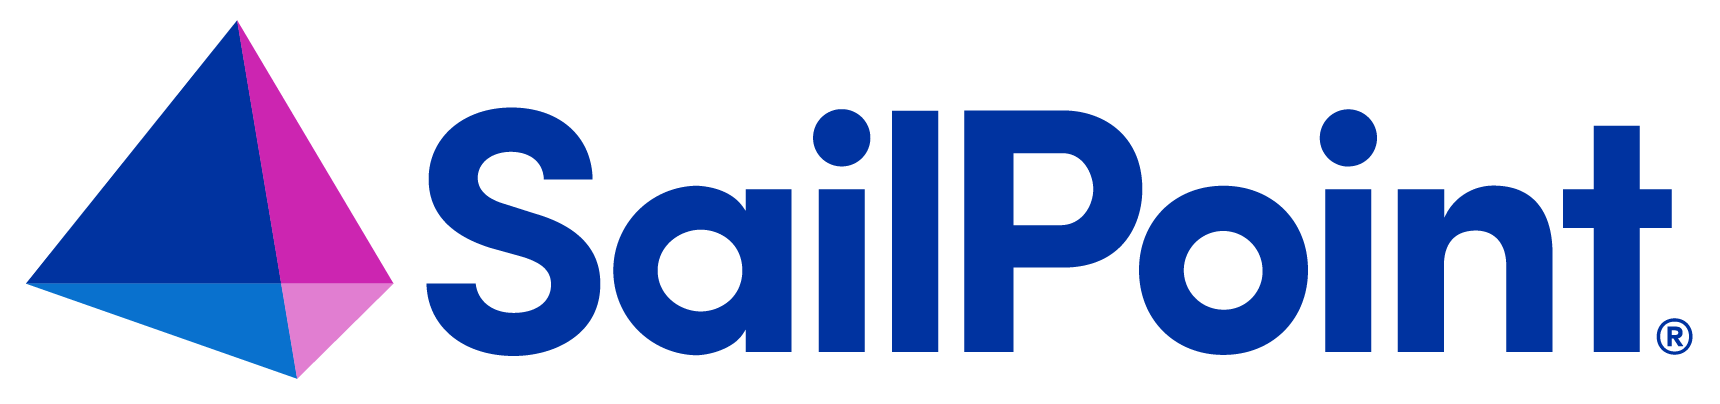 SailPoint logo